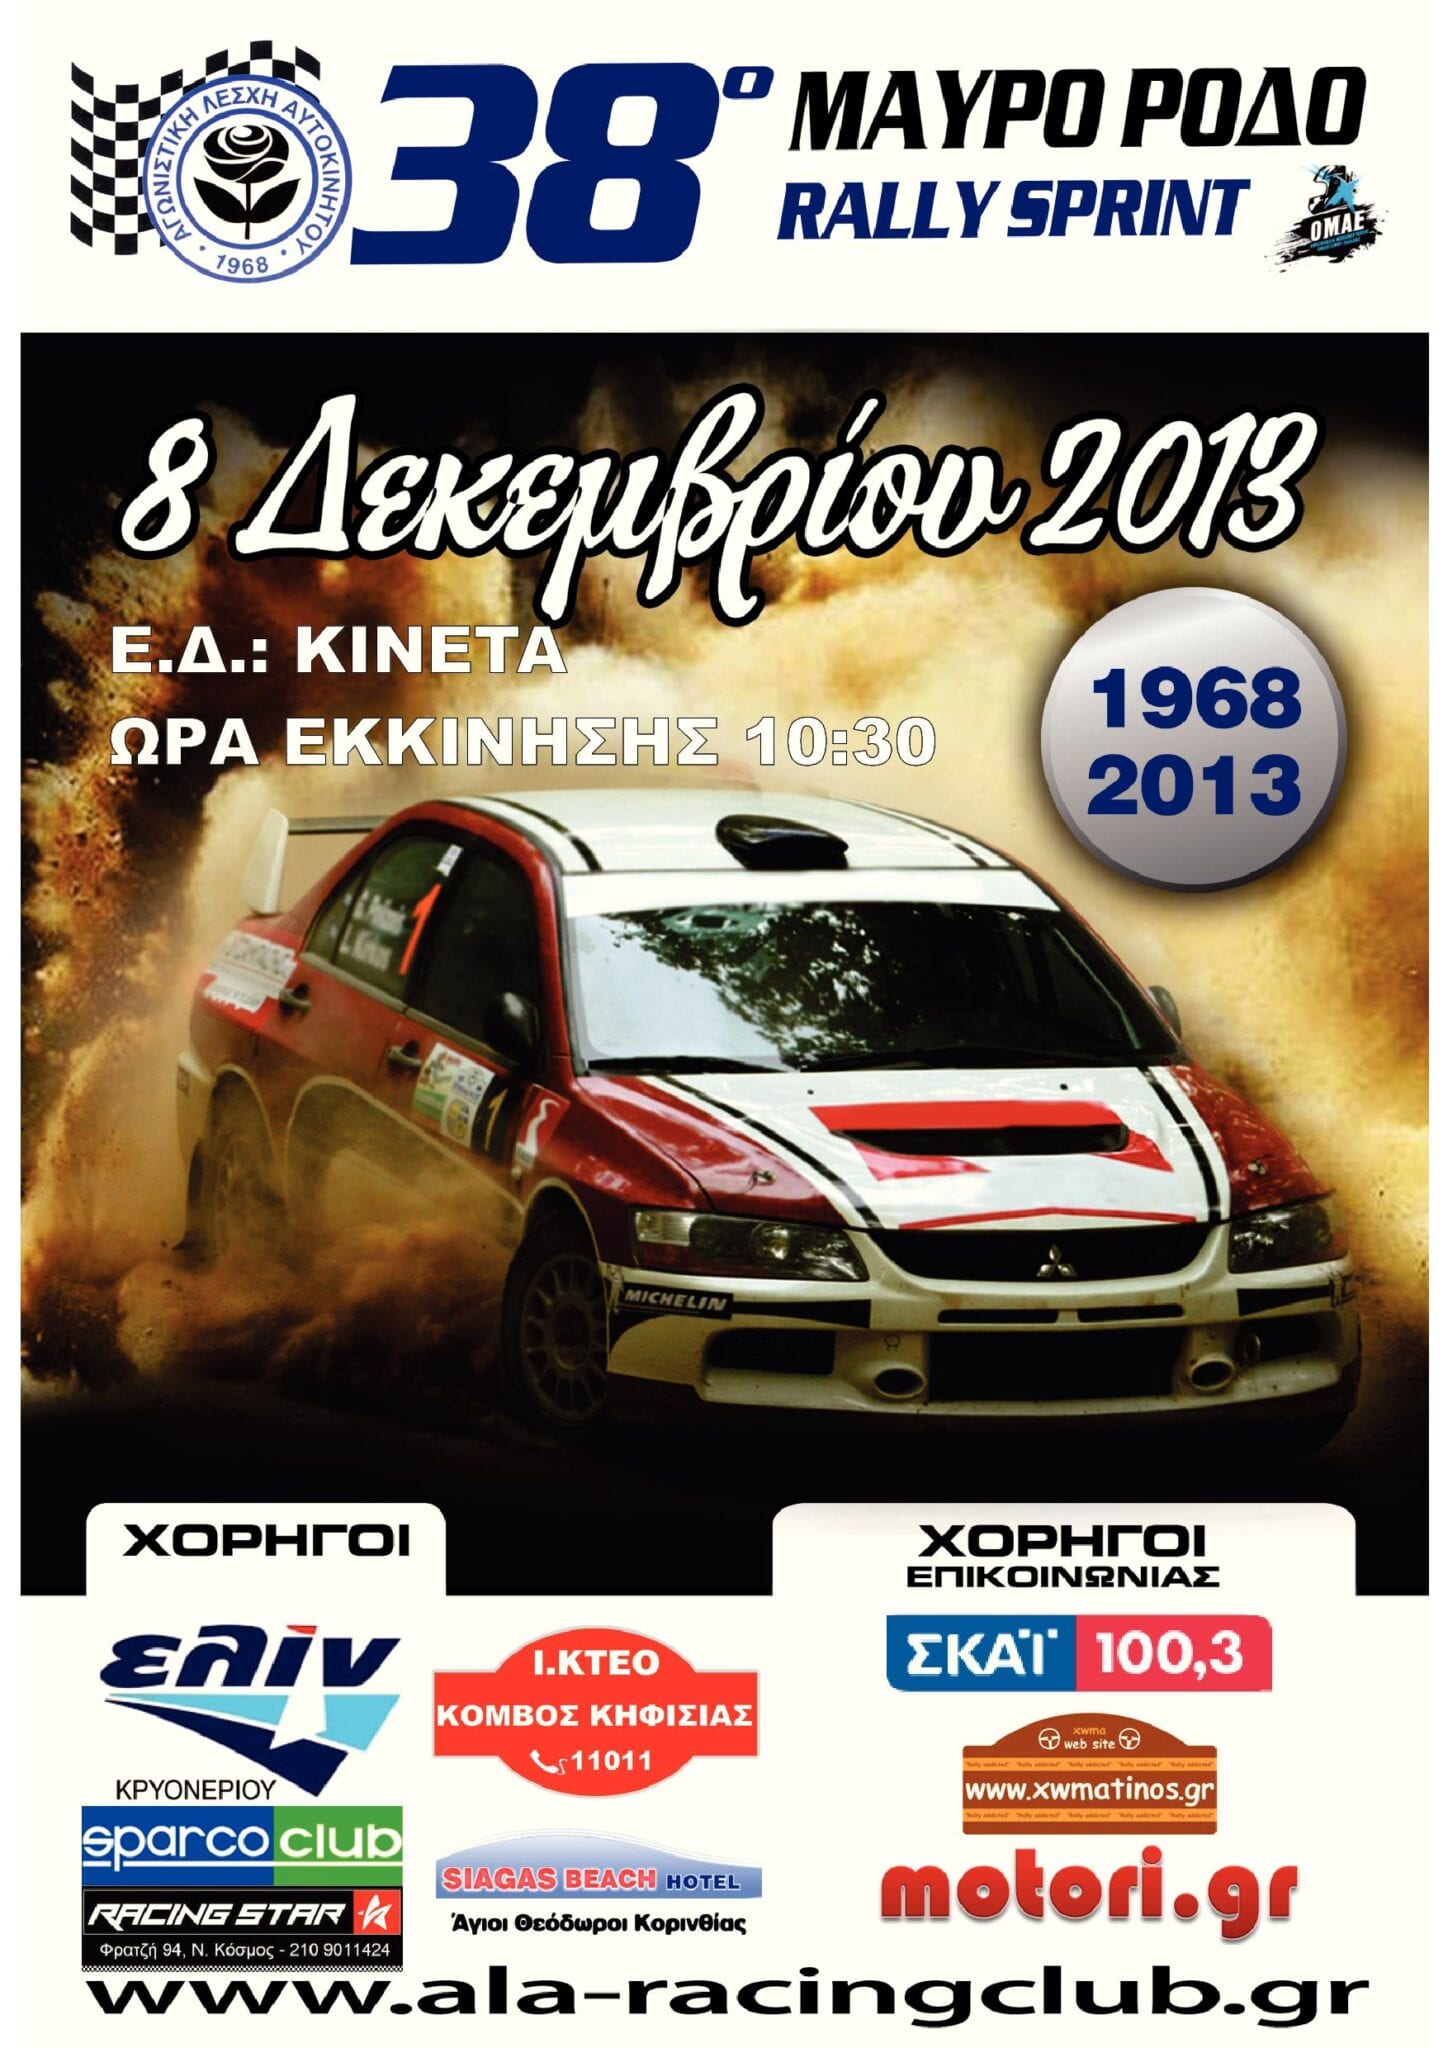 38ο Rally Sprint Μαύρο Ρόδο 2013 Συμμετοχές